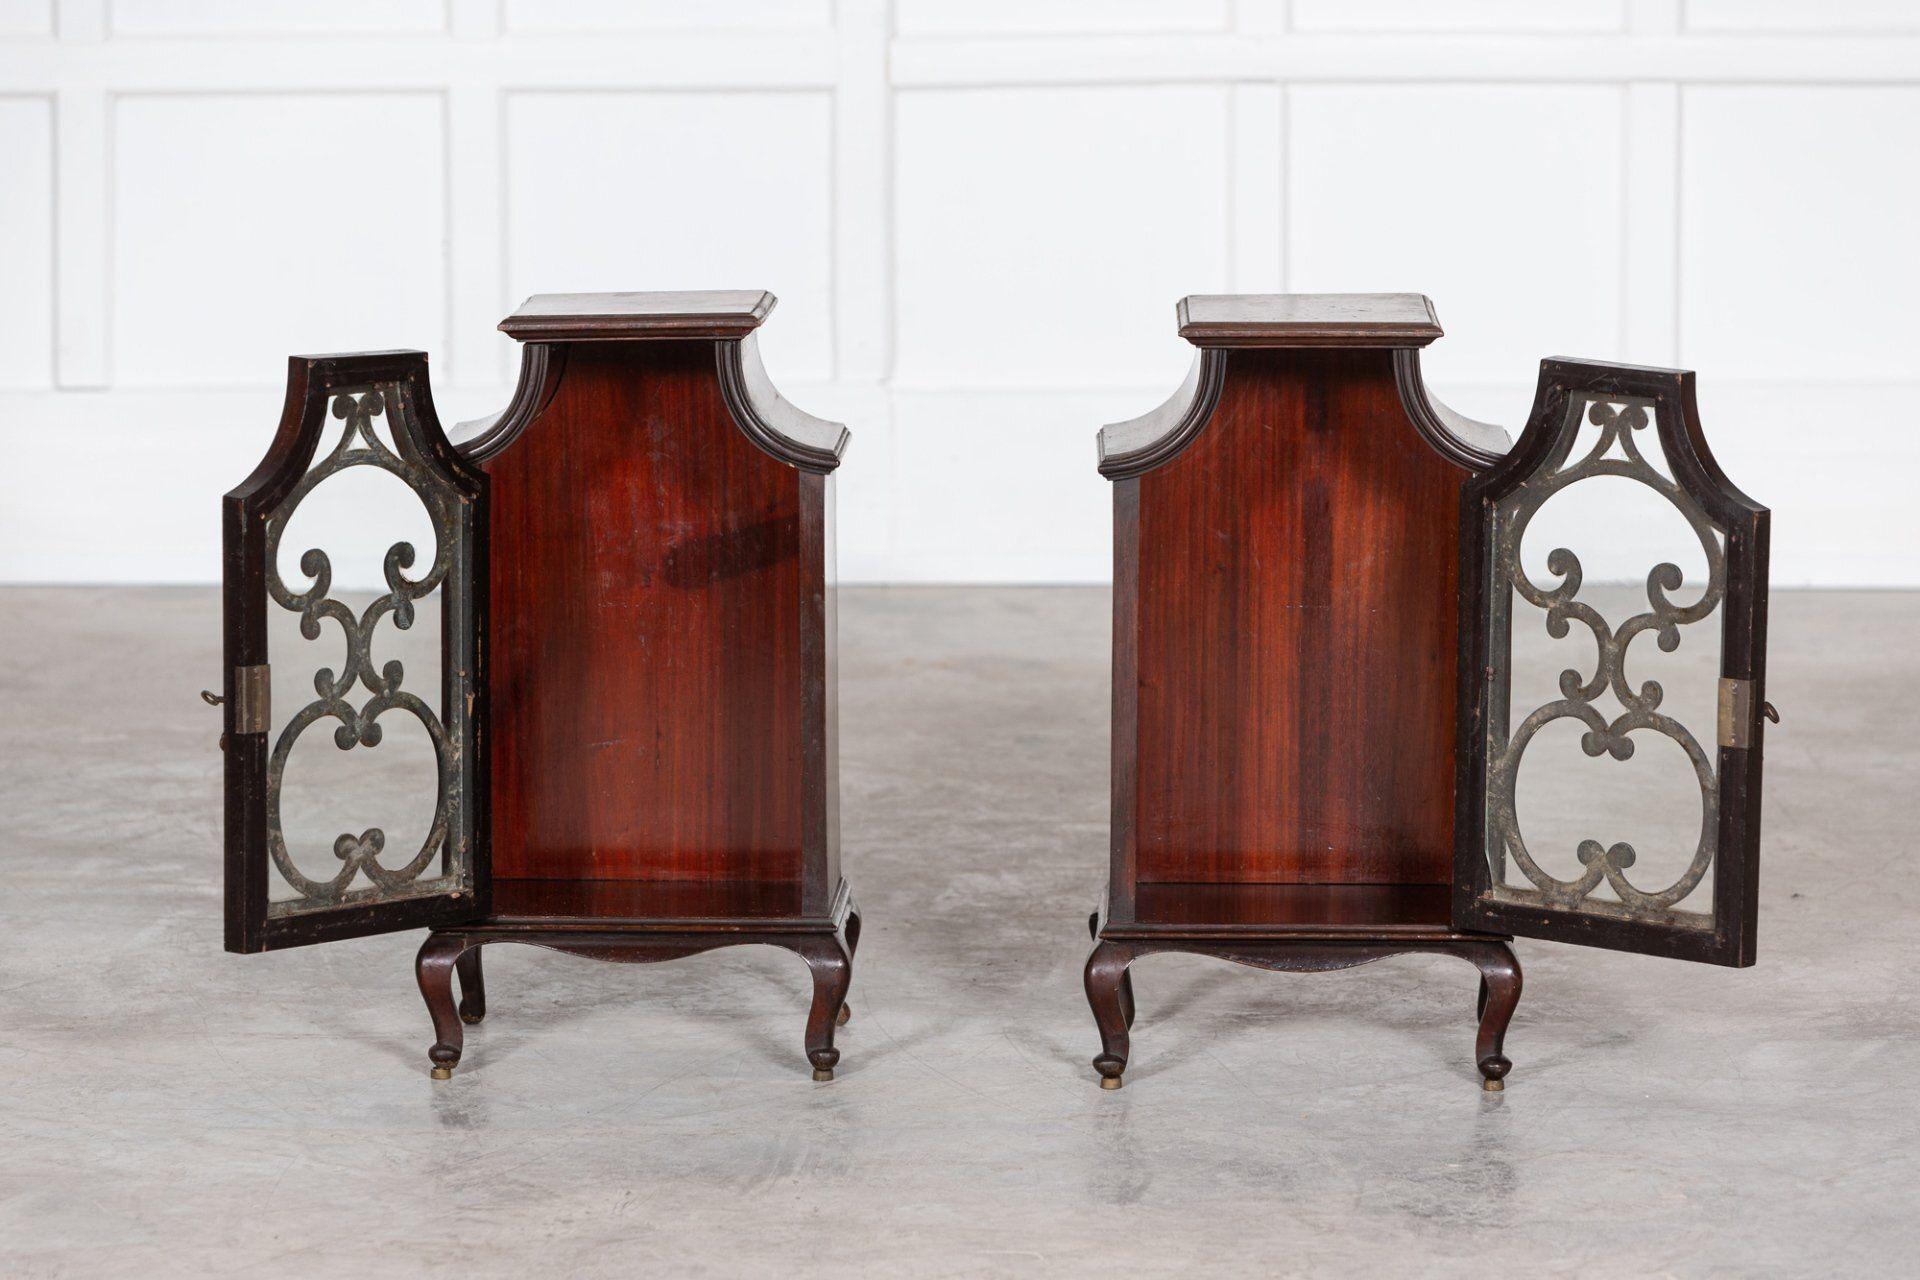 vers 1890.
Paire de cabinets vitrés anglais du 19ème siècle en acajou avec clés originales.
Vendu par paire.
Excellente forme.
sku 1227.
Mesures : L30 x P24 x H74 cm.